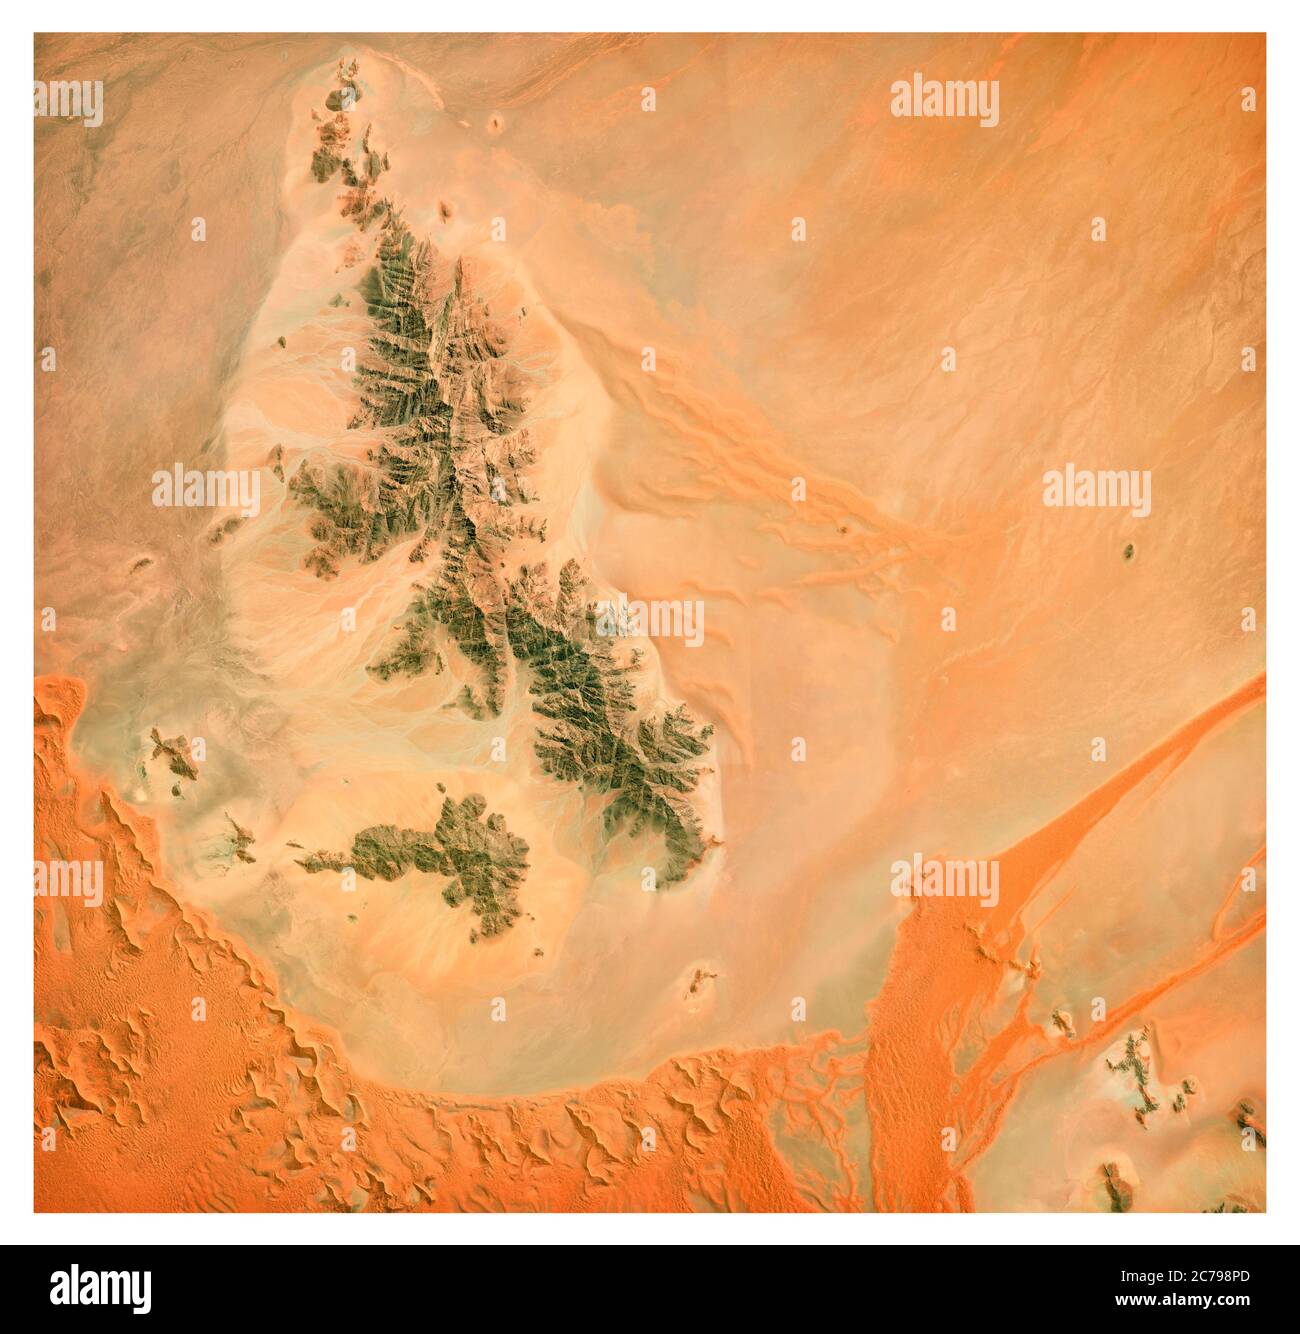 Satellitenansicht der Namibias Wüste, Landschaft und Berge. Natur und Luftaufnahme. Blumenformen. Globale Erwärmung und Klimawandel Stockfoto